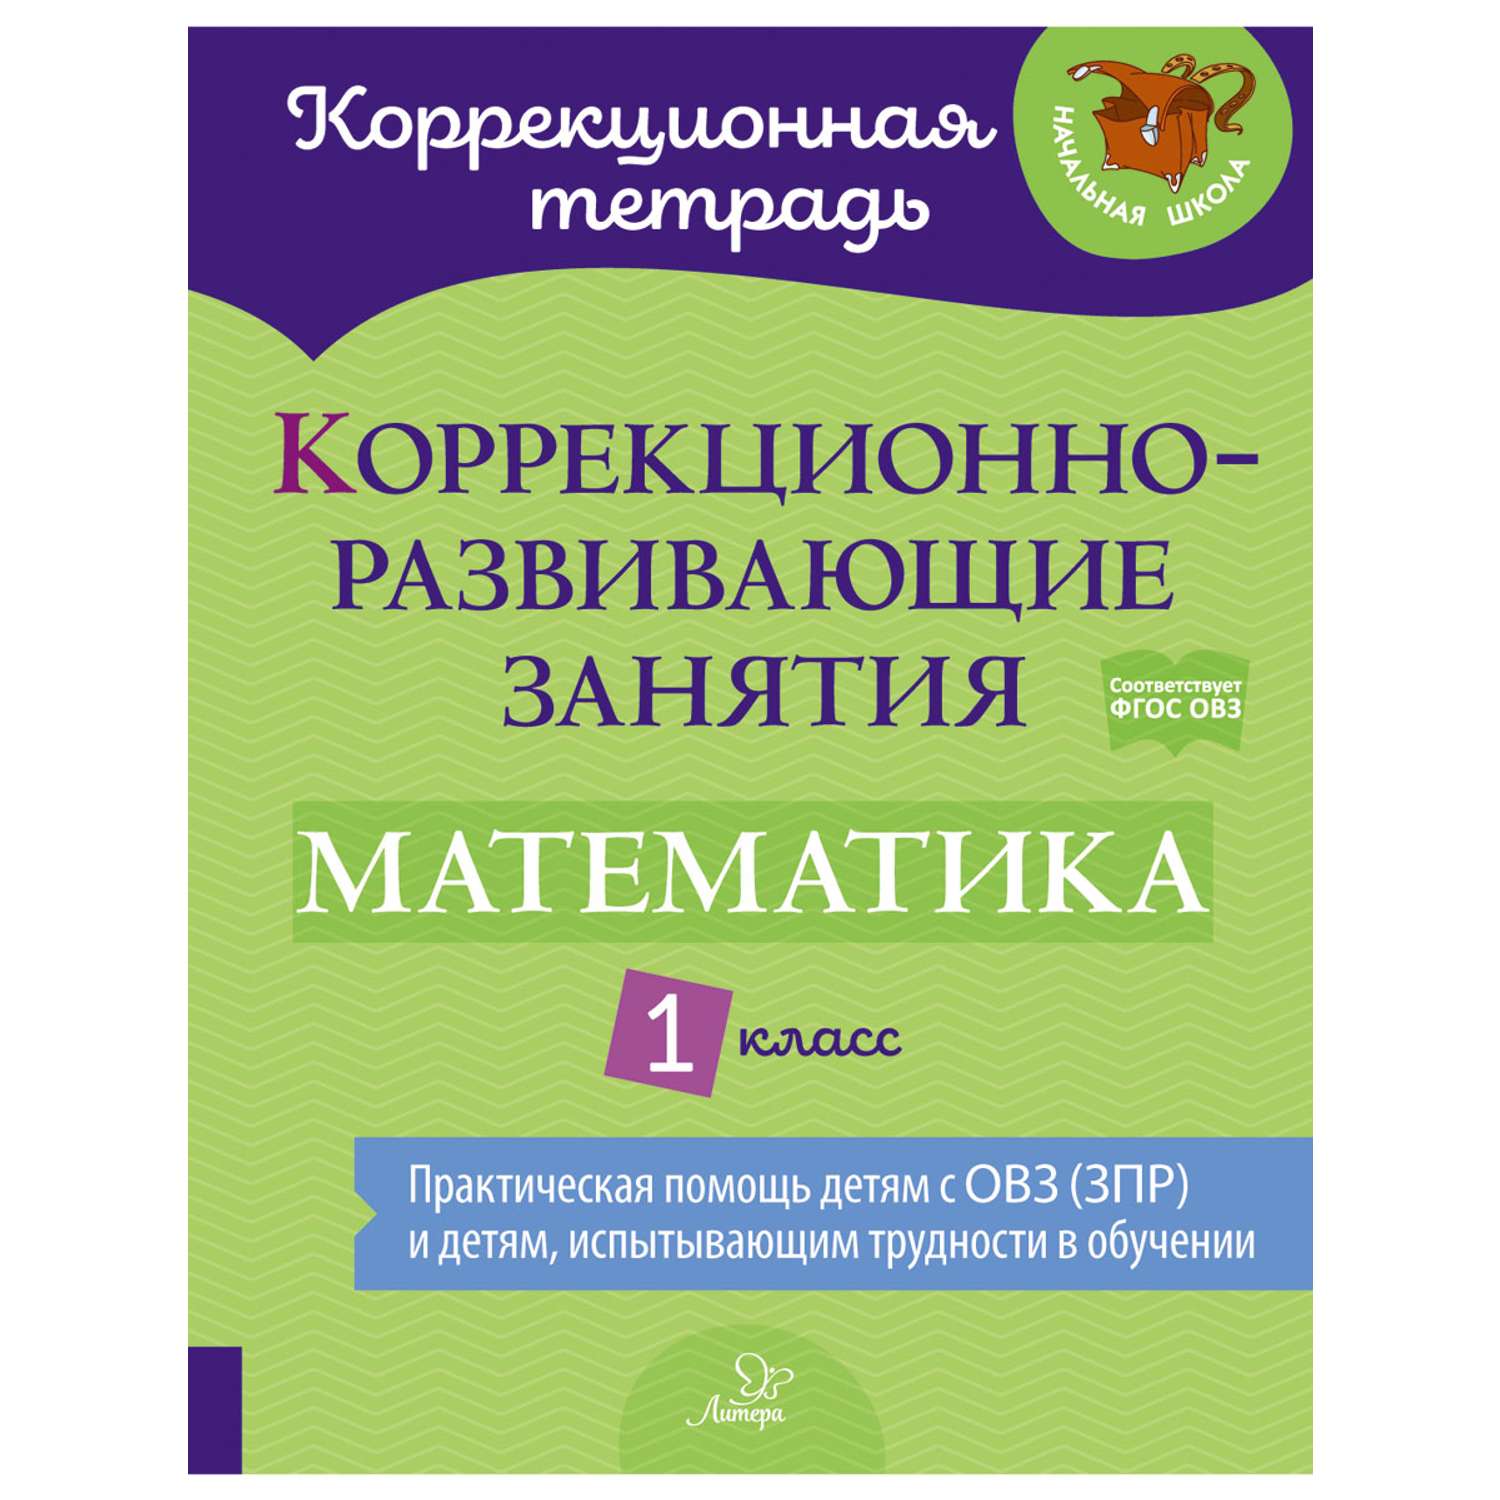 Книга ИД Литера Коррекционно-развивающие занятия. Математика. 1 класс - фото 1